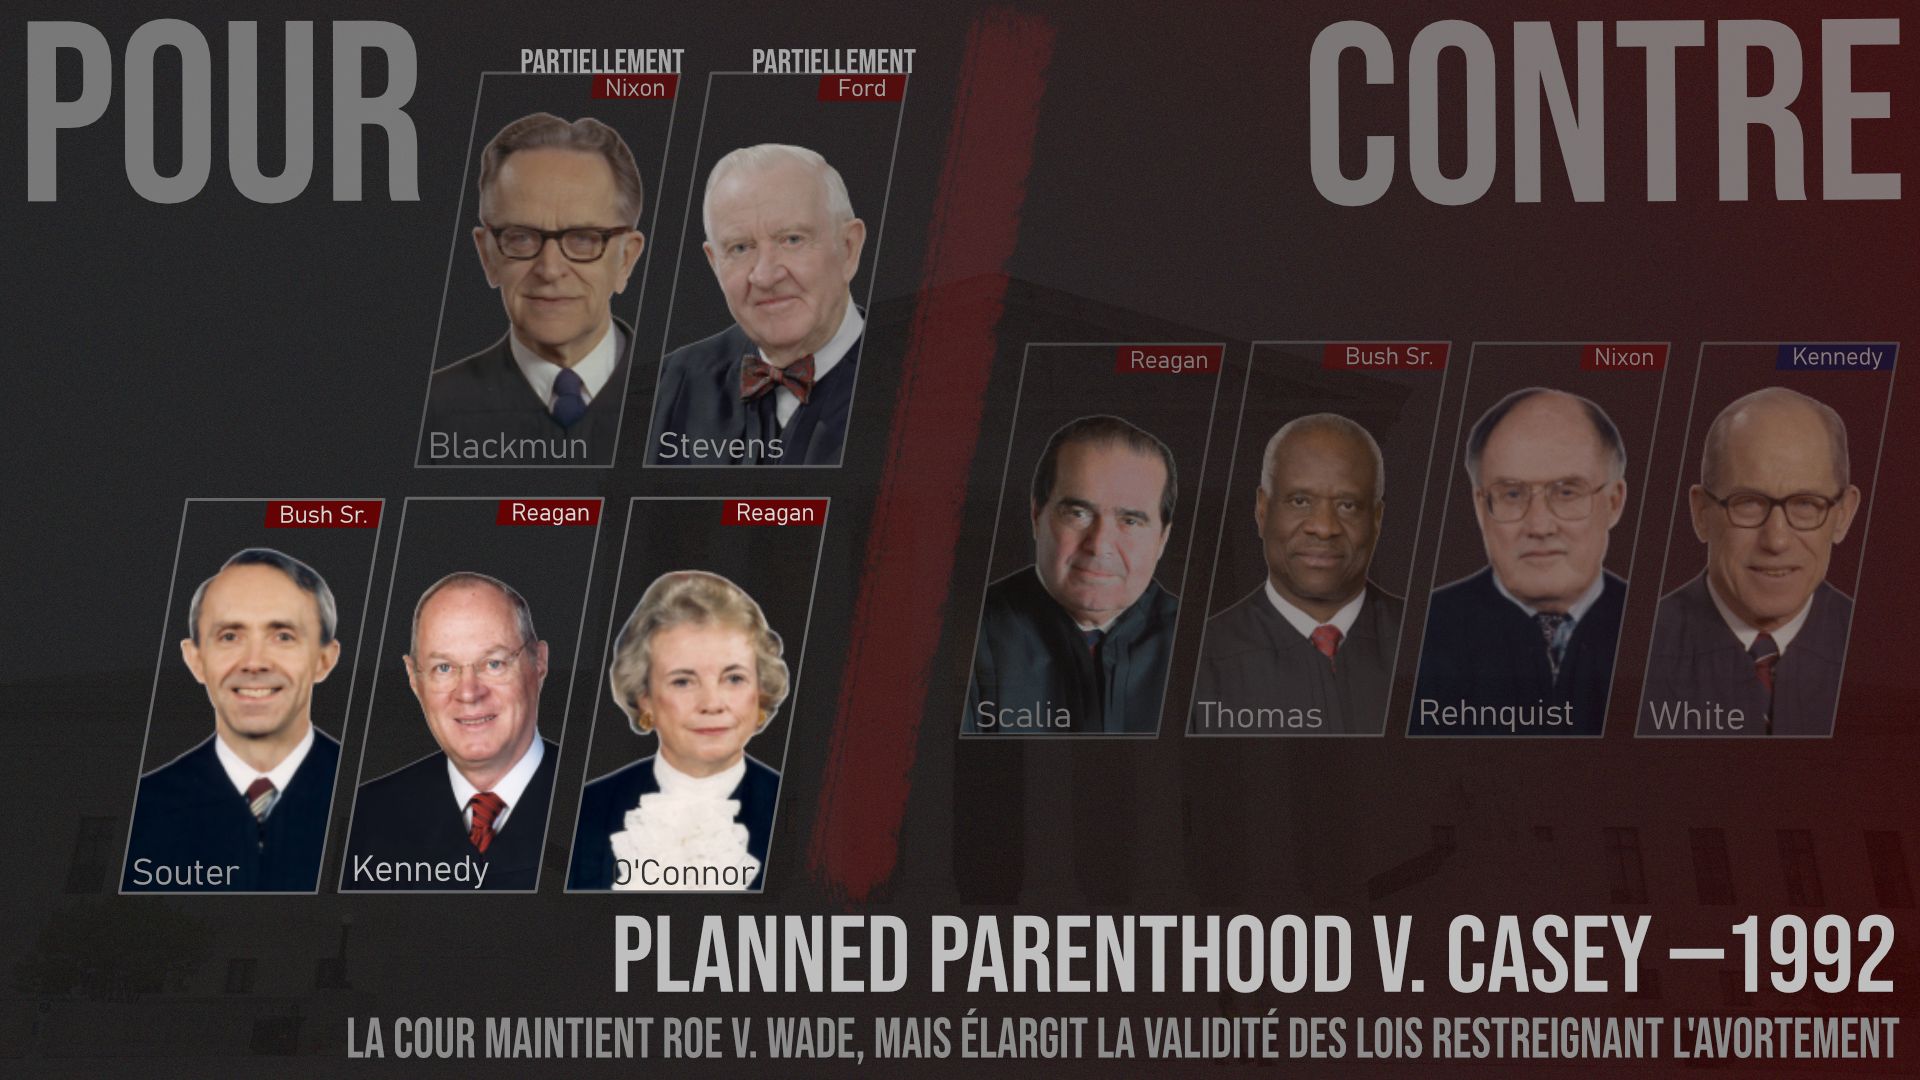 Résultat de la décision de la Cour suprême dans "Planned Parenthood v. Casey" (1992). Pour chaque juge, le président qui l’a nommé, et sa couleur politique : rouge = républicain ; bleu = démocrate.